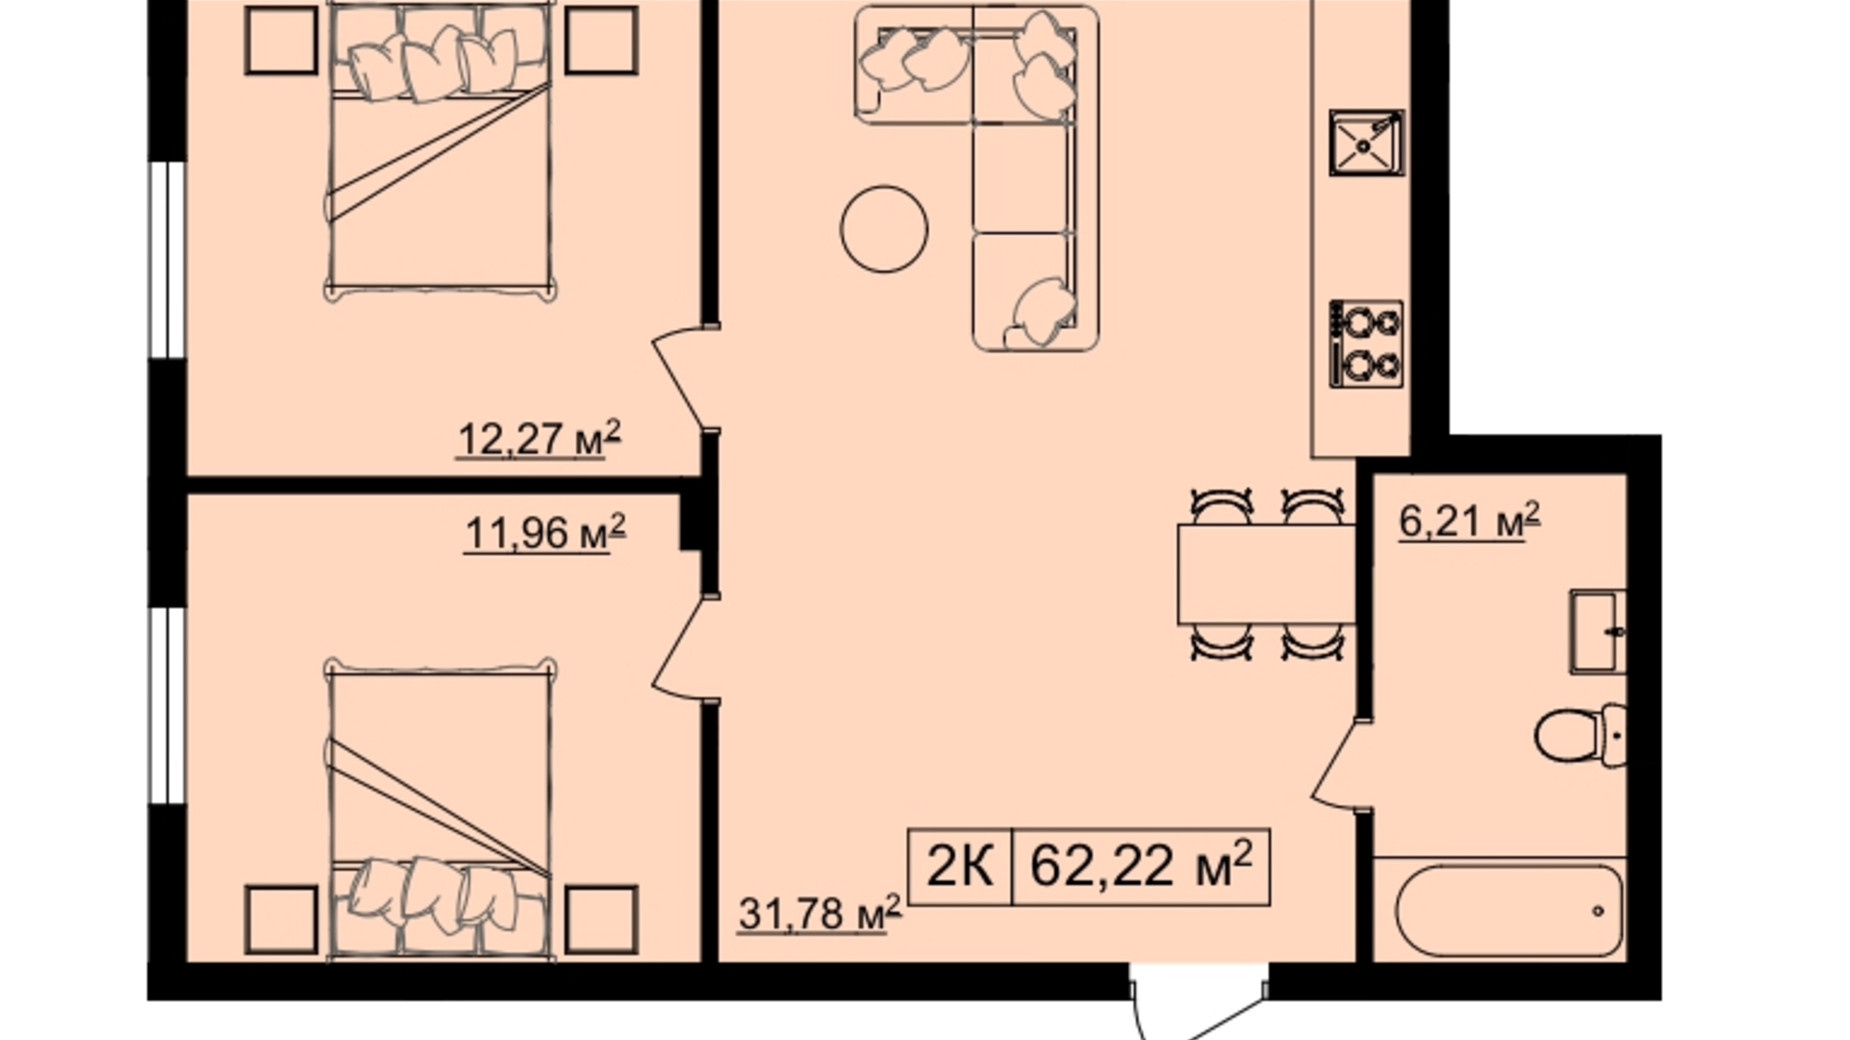 Планировка 2-комнатной квартиры в ЖК на Шпитальний 2 62.22 м², фото 564021